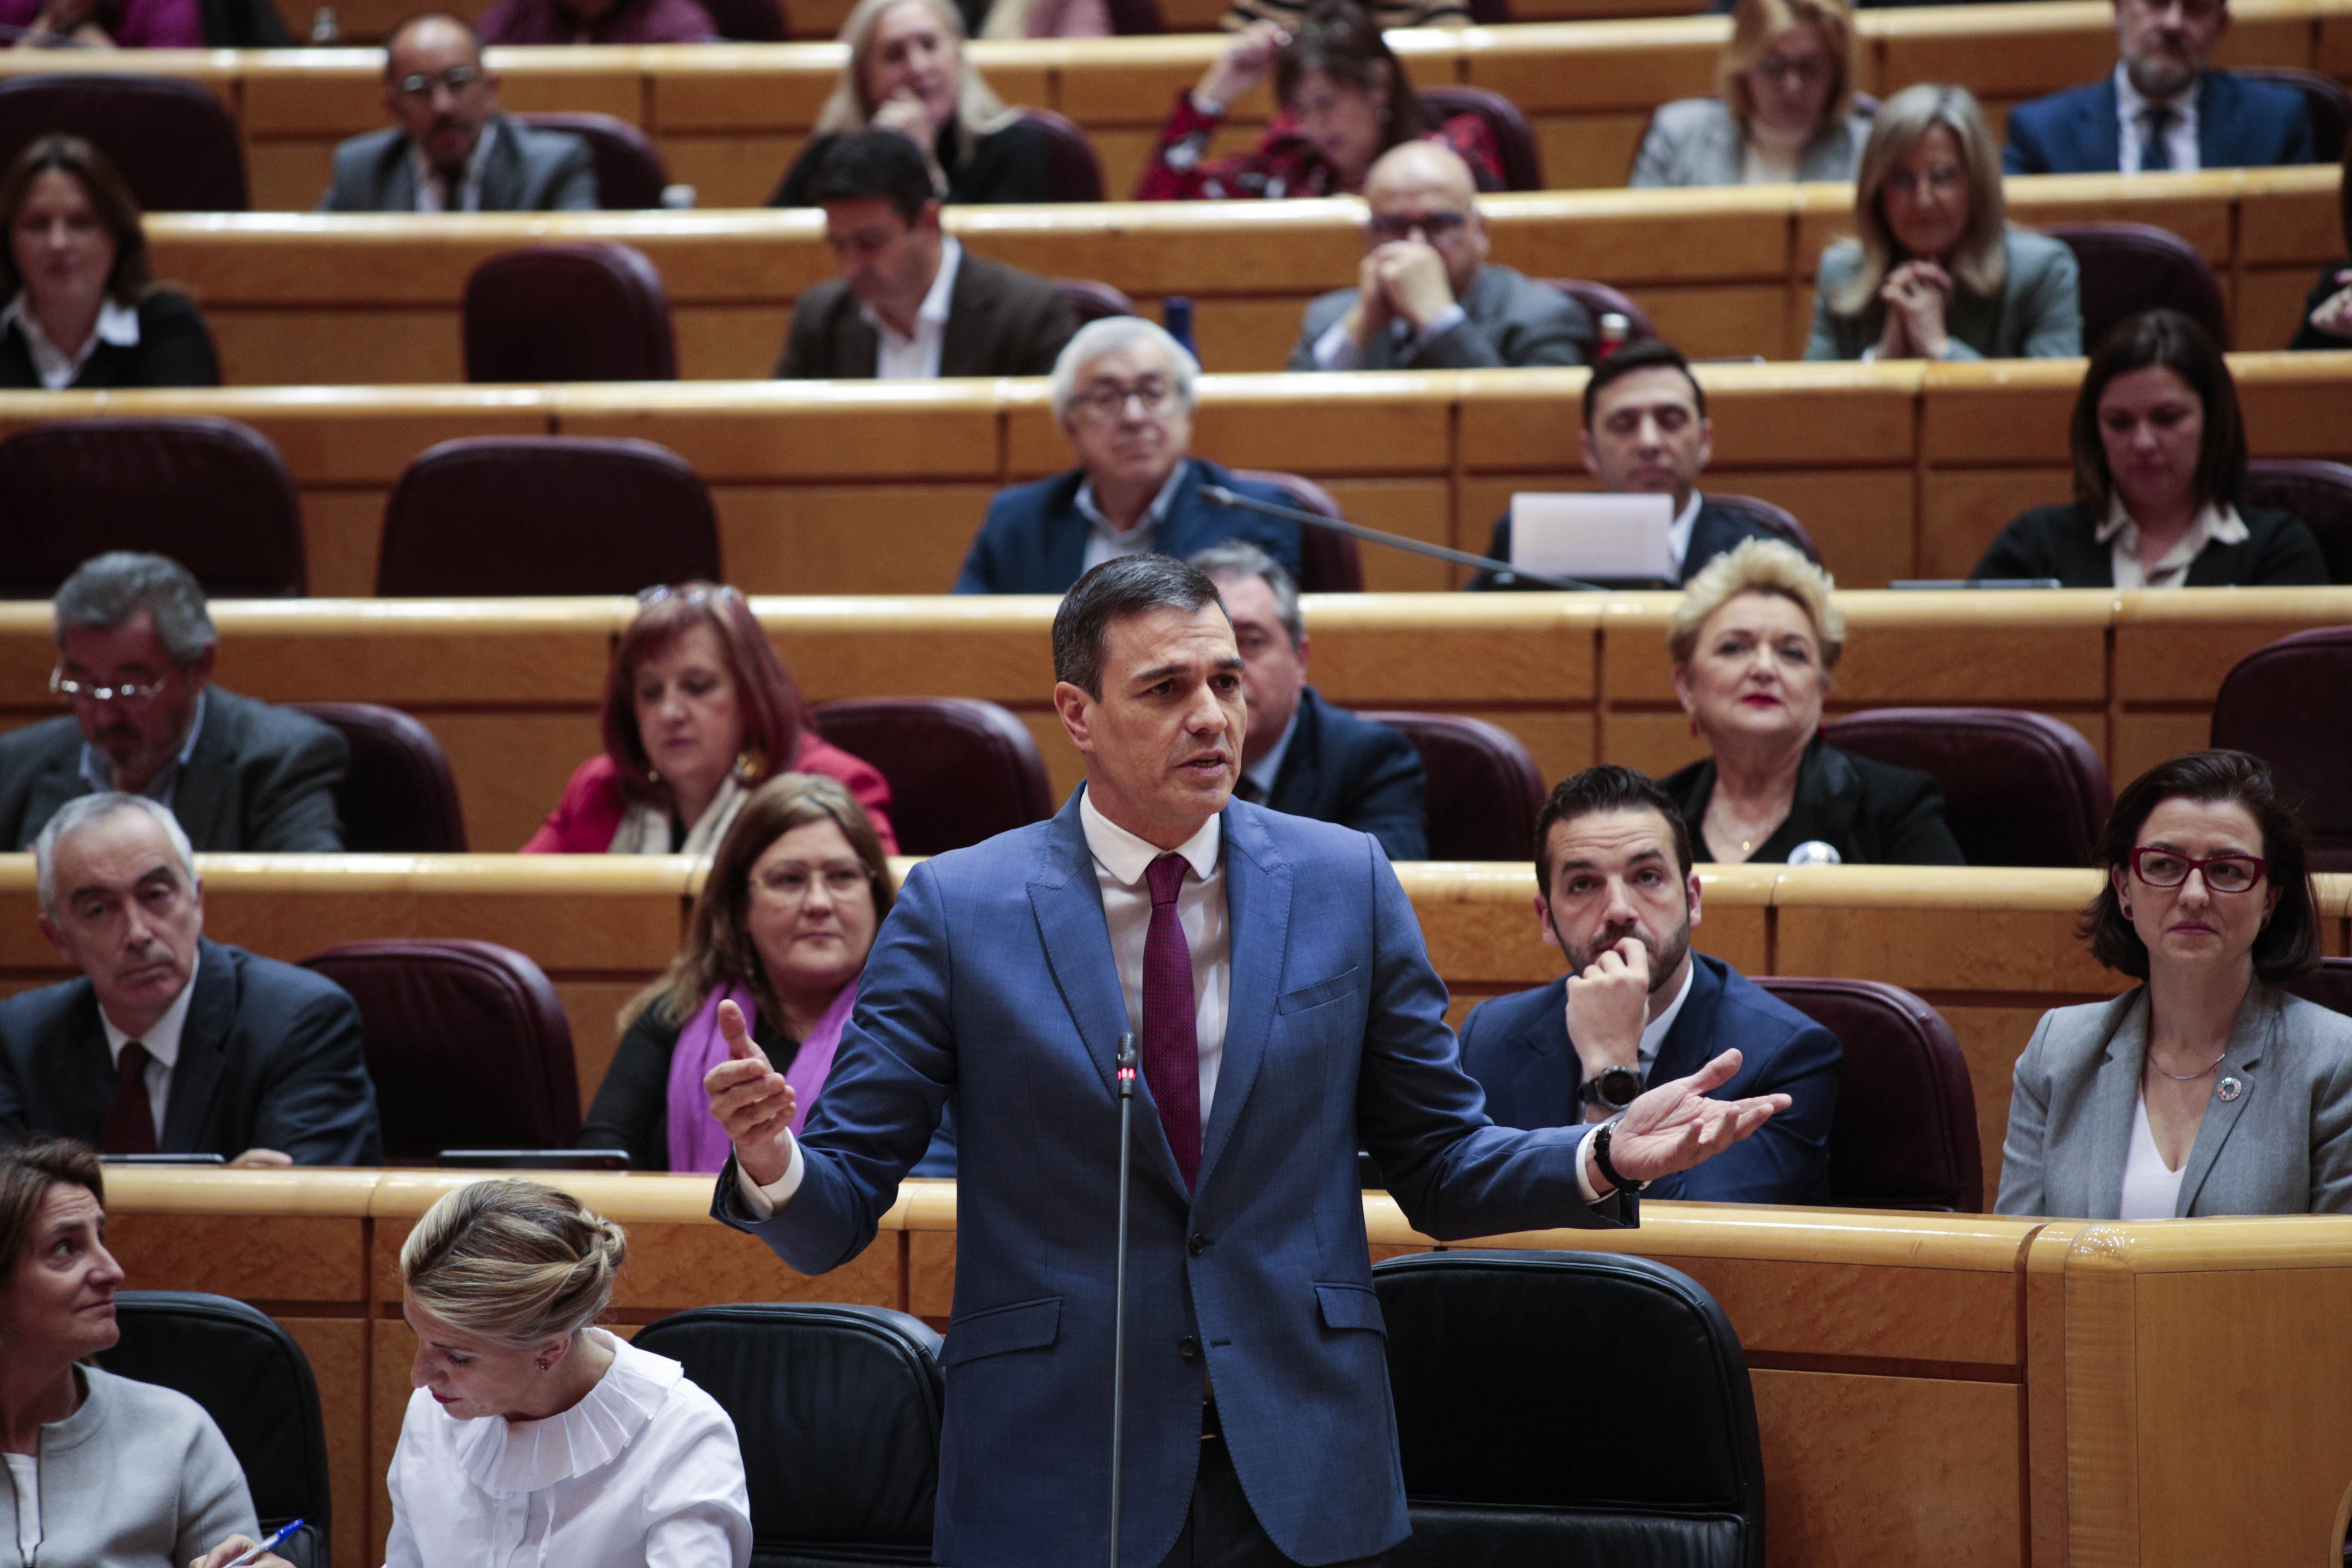 Feijóo recarga ante Sánchez su discurso ideológico contra la ‘ley trans’: “Deje de molestar a la gente de bien”